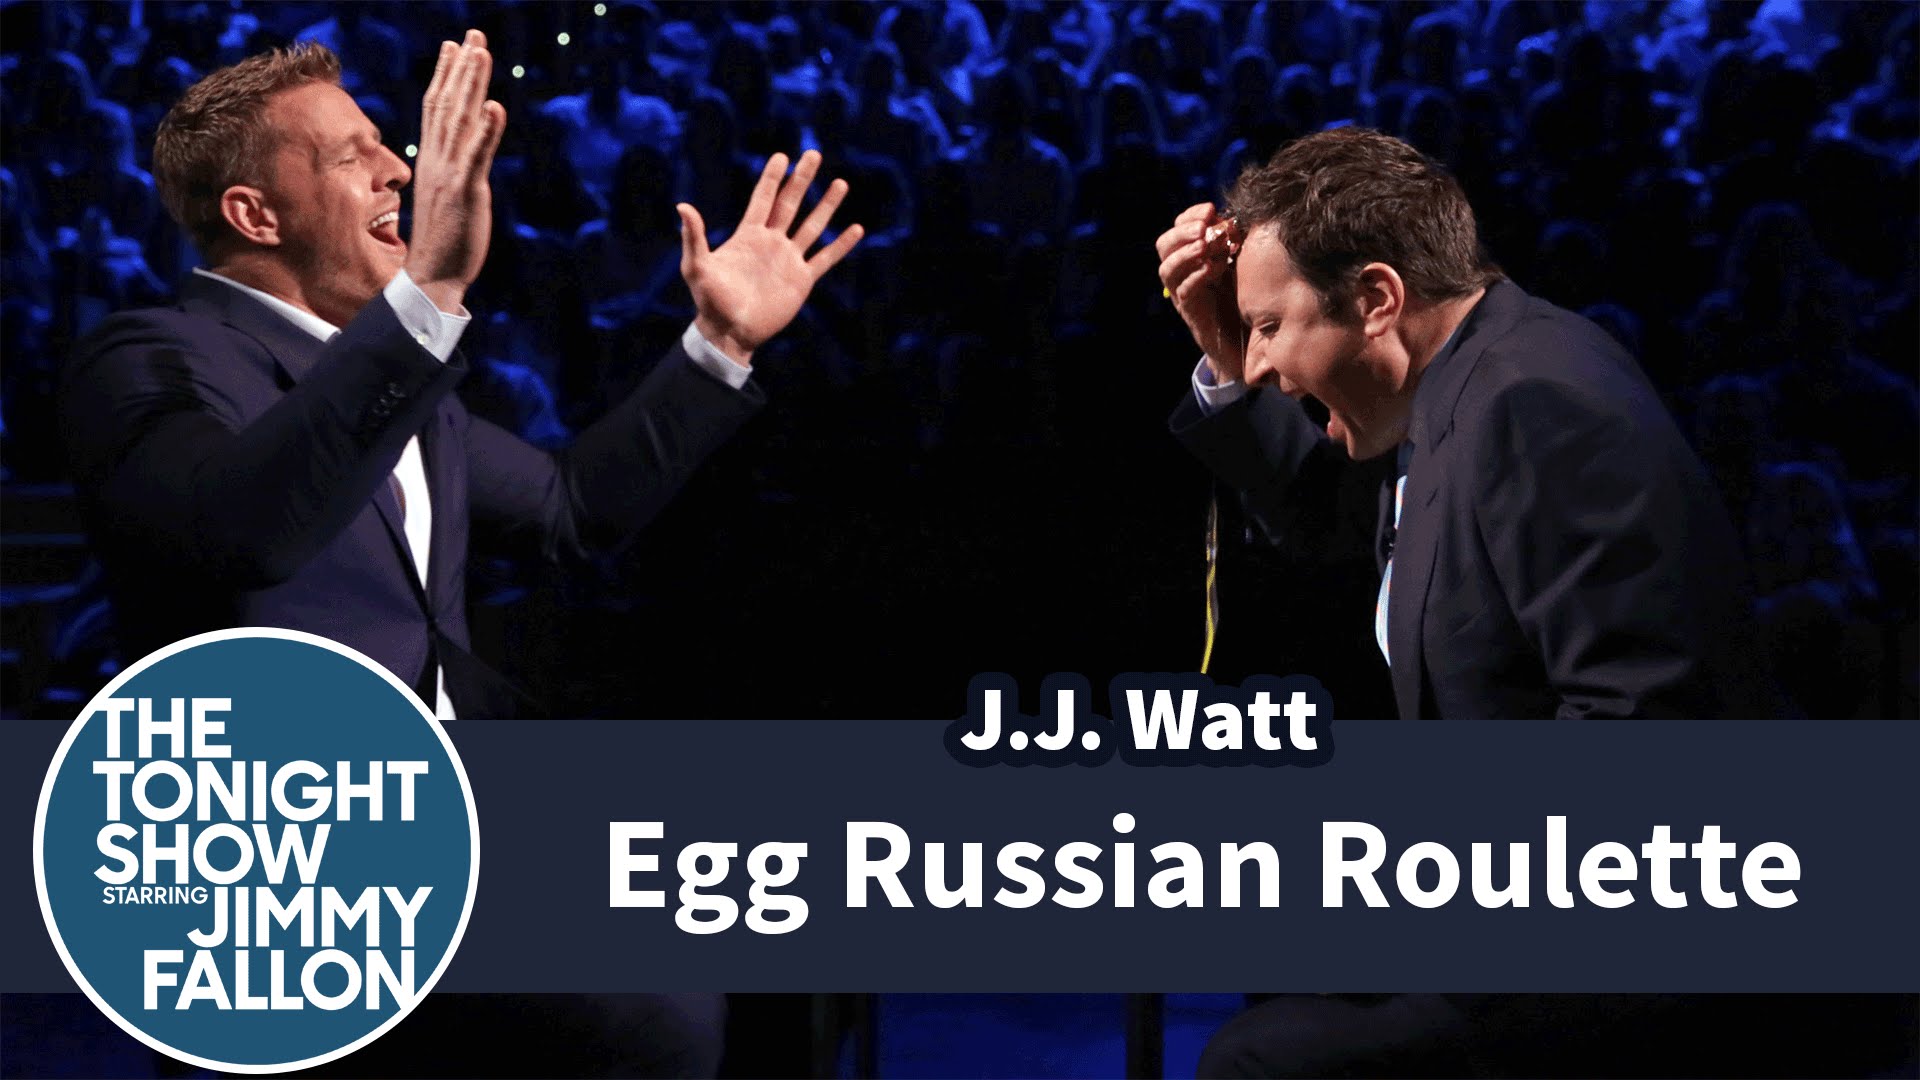 JJ Watt plays egg Russian roulette with Jimmy Fallon